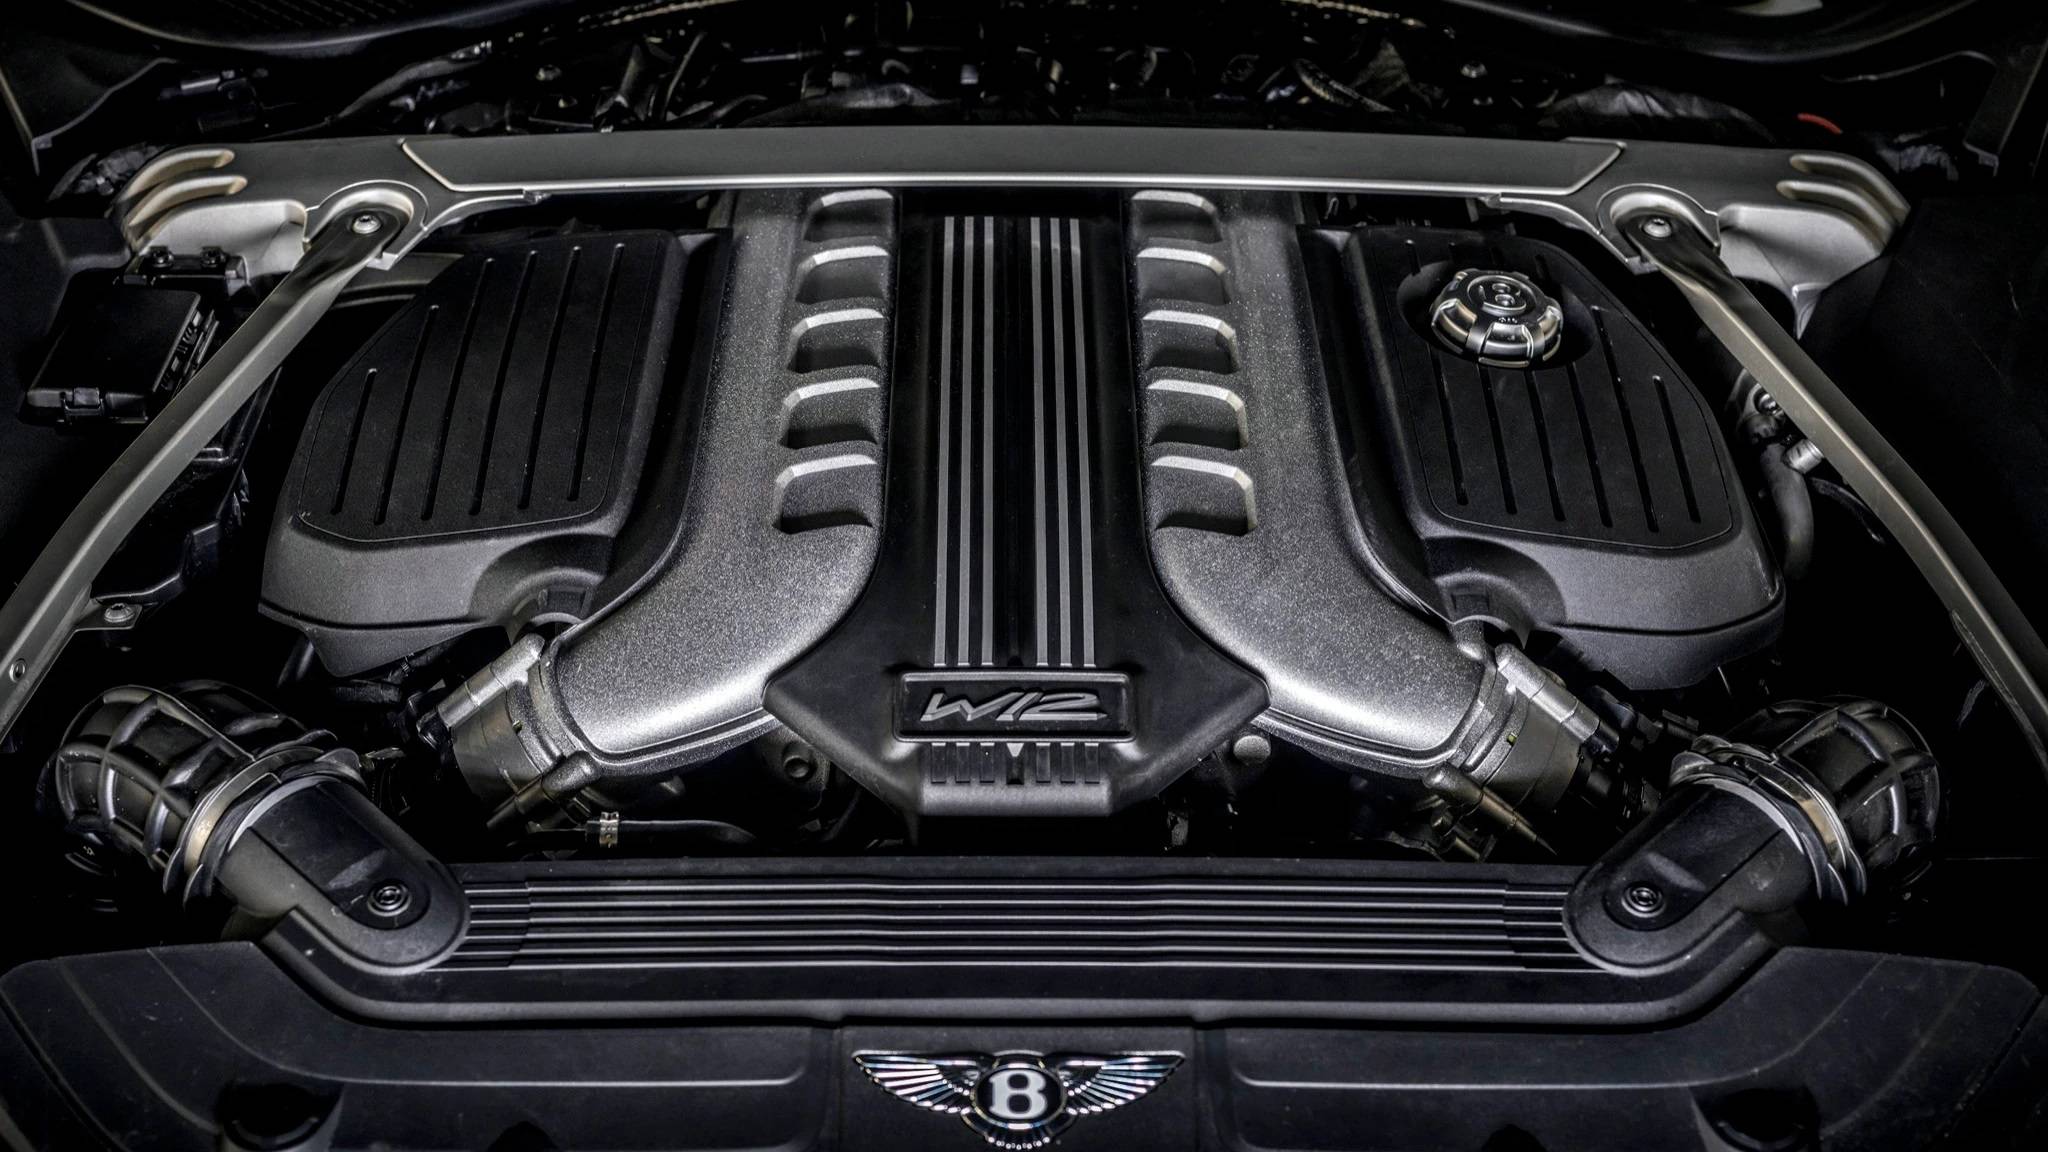 OiCar-Bentley是透過什麼頂尖底盤技術 讓車輛兼具舒適與性能呢